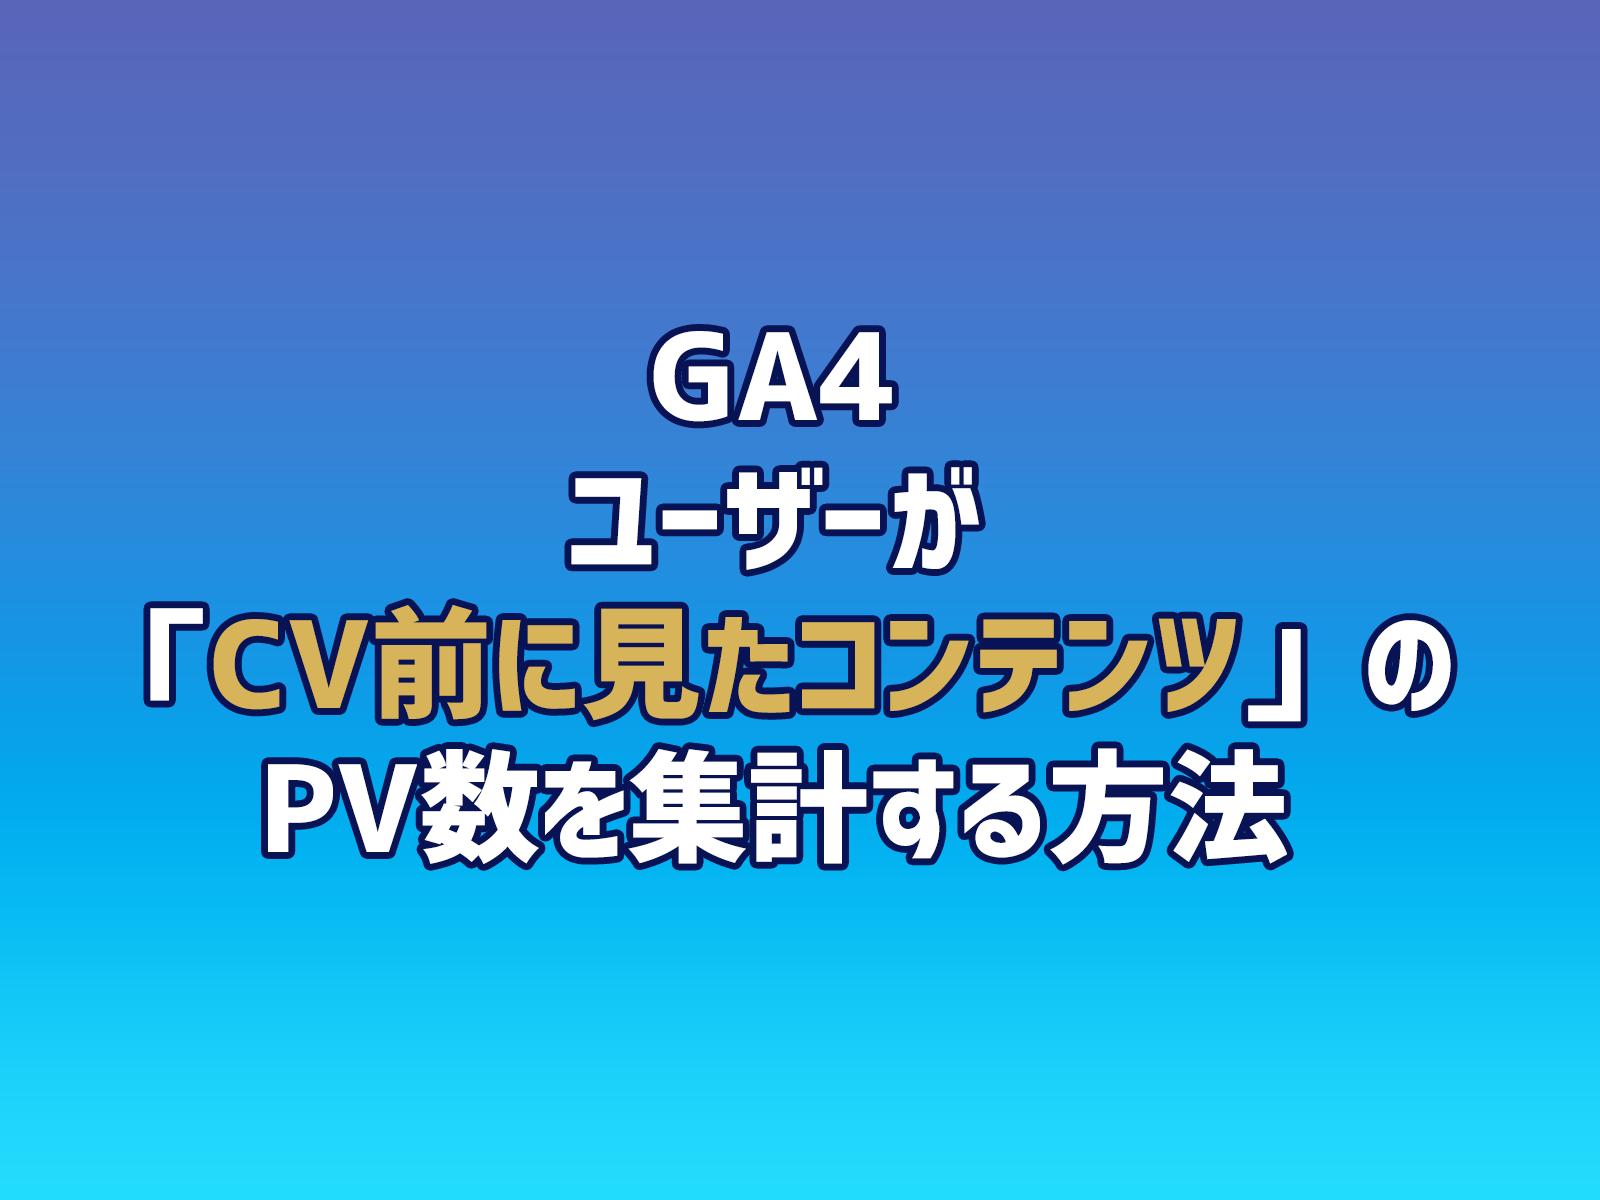 Cover Image for GA4でユーザーが「CV前に見たコンテンツ」のPV数を集計する方法